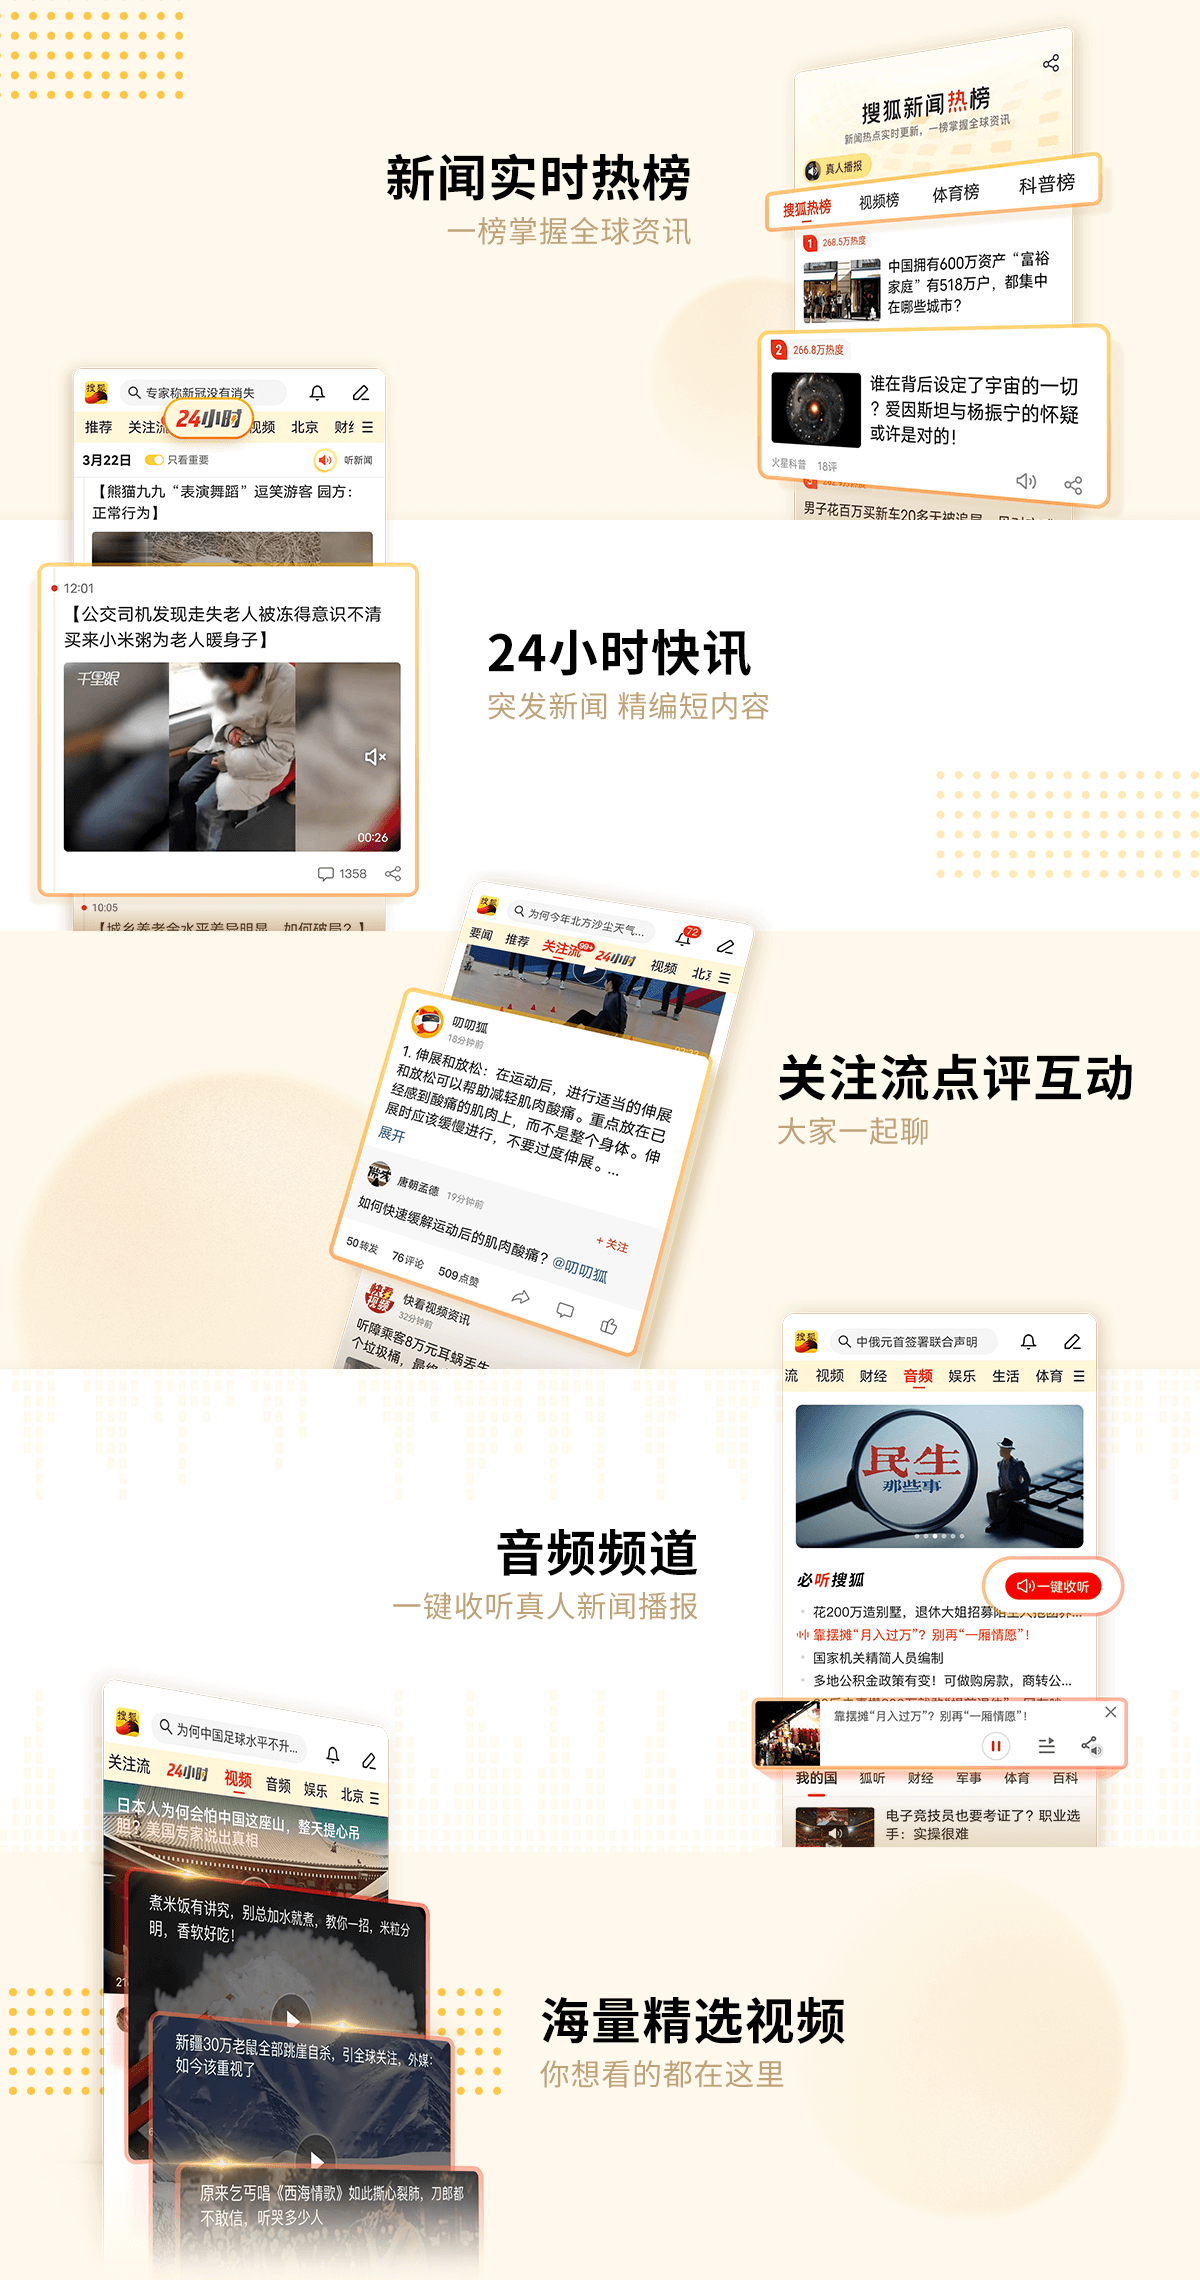 搜狐新闻微信客户端腾讯游戏中心app下载